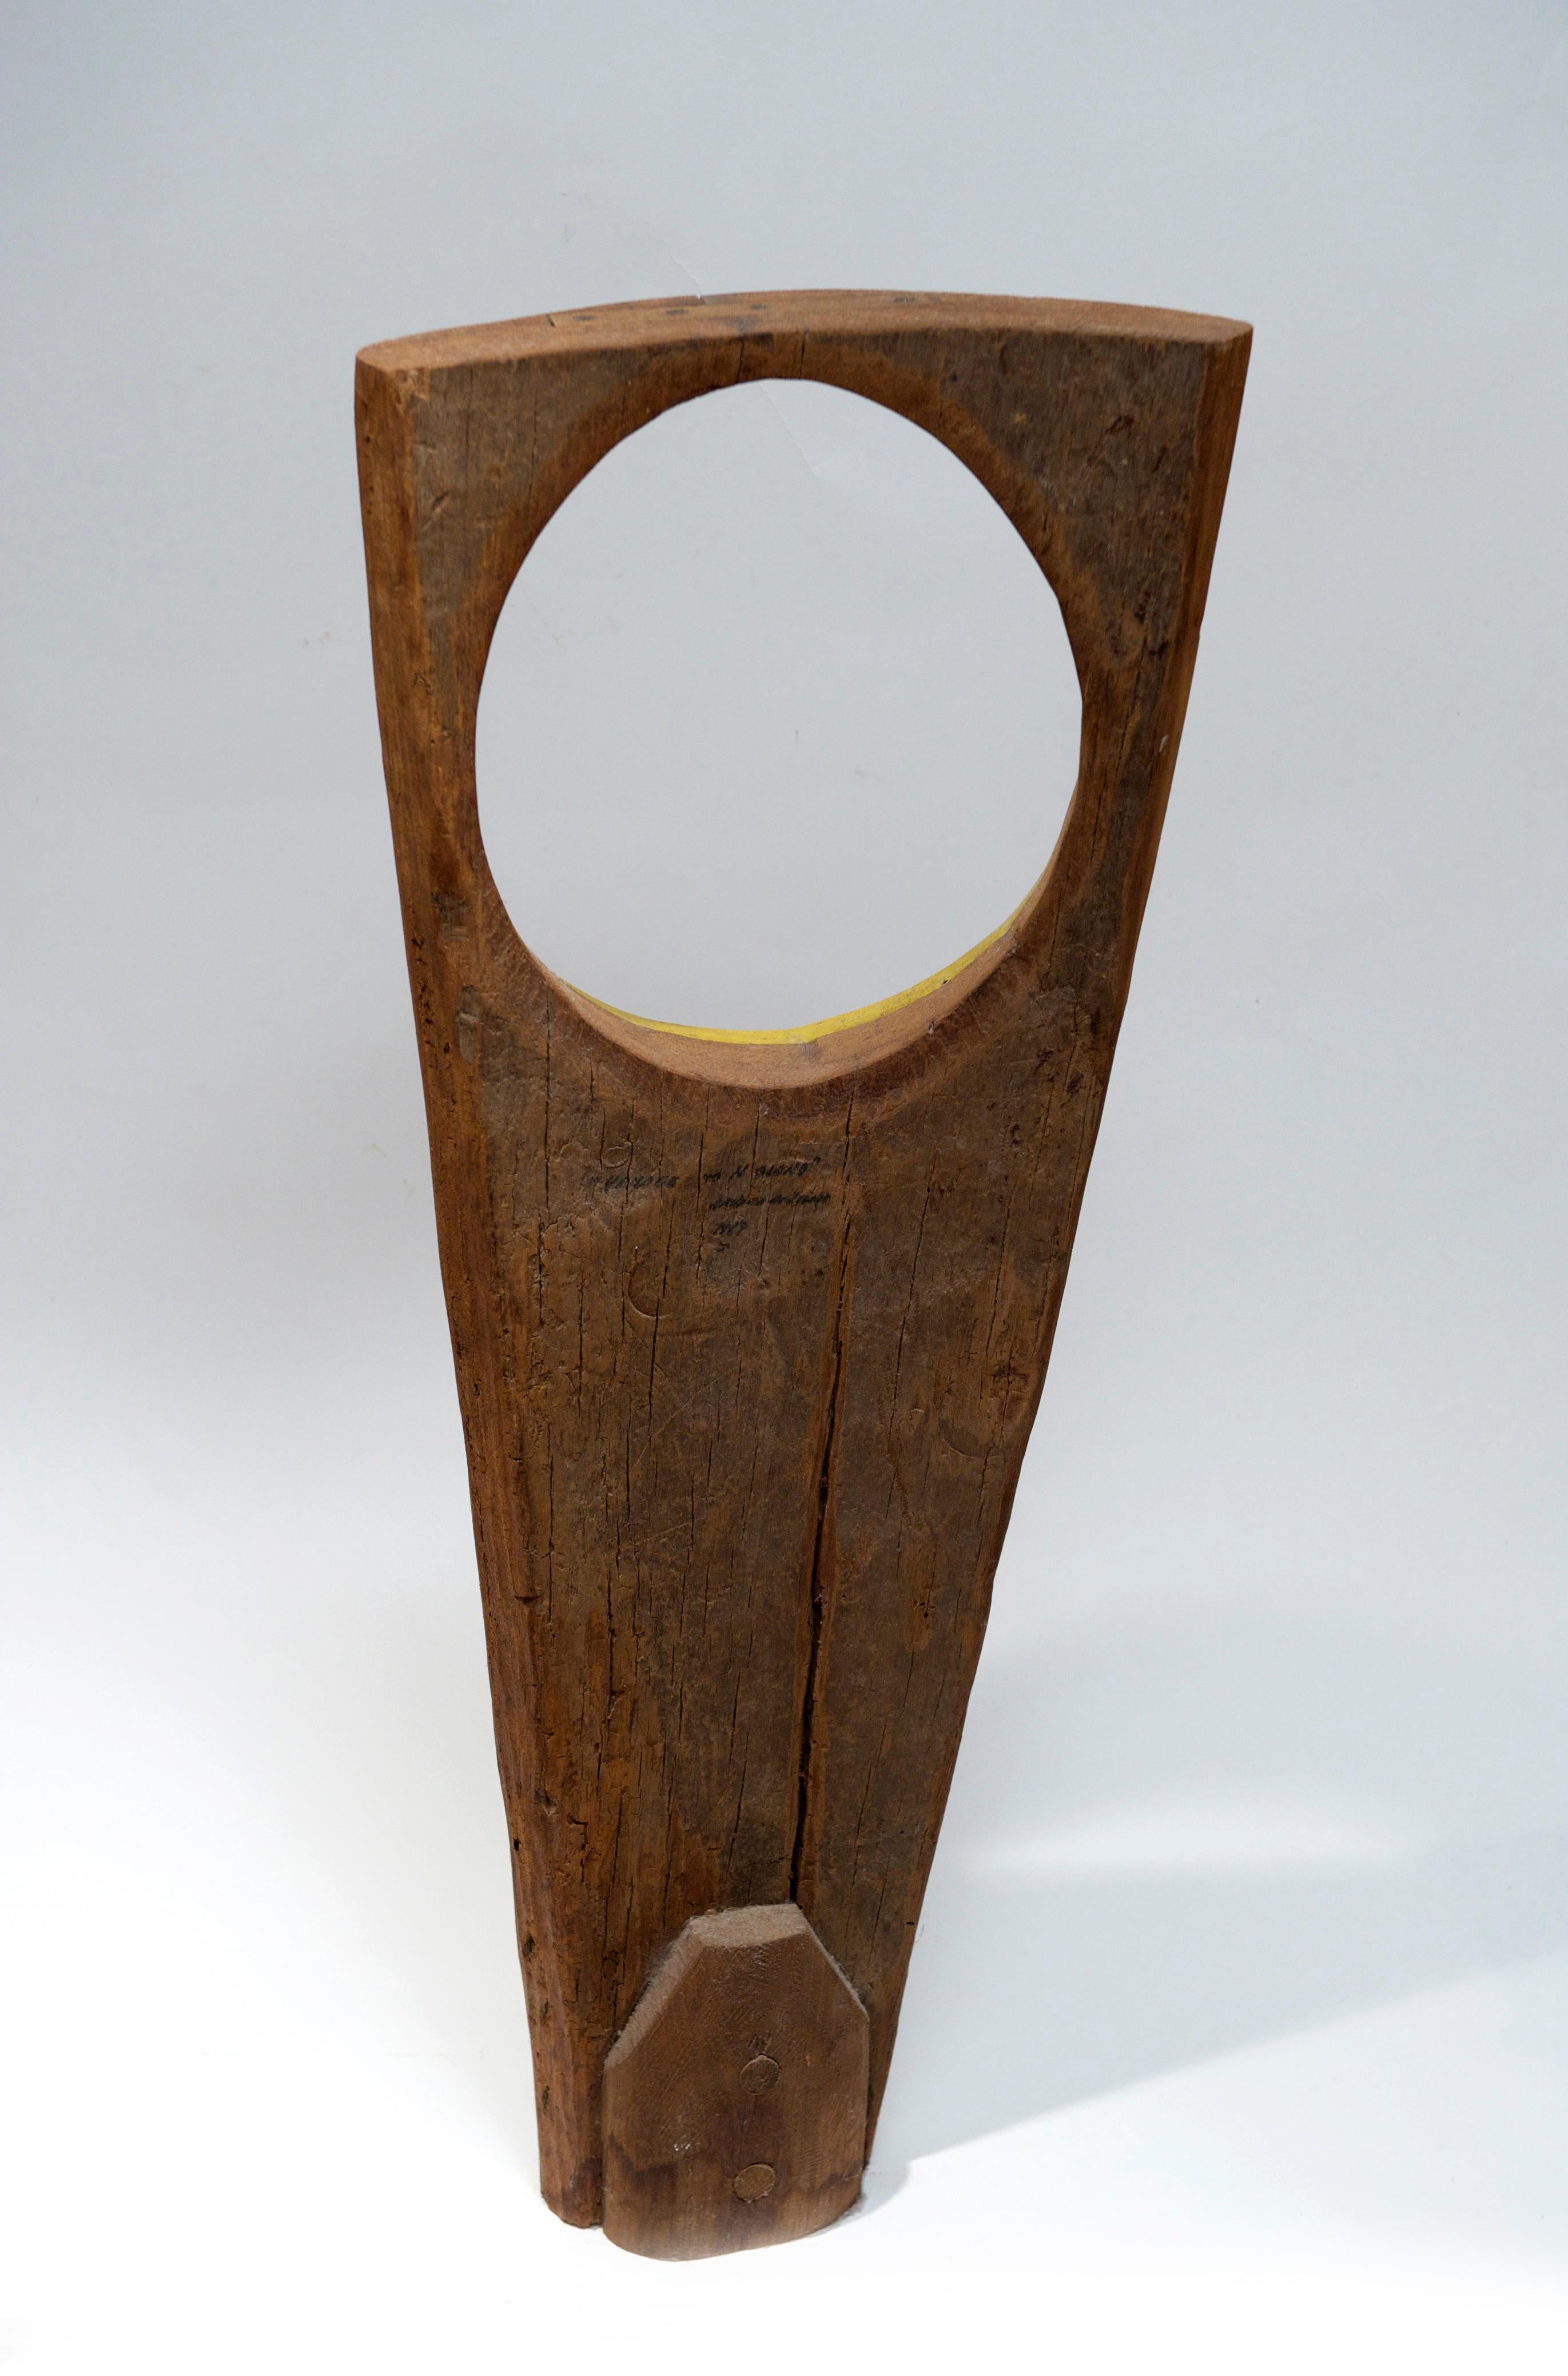 Exceptional wood sculpture by Andrea De Zerega (1916-1990). Titled 